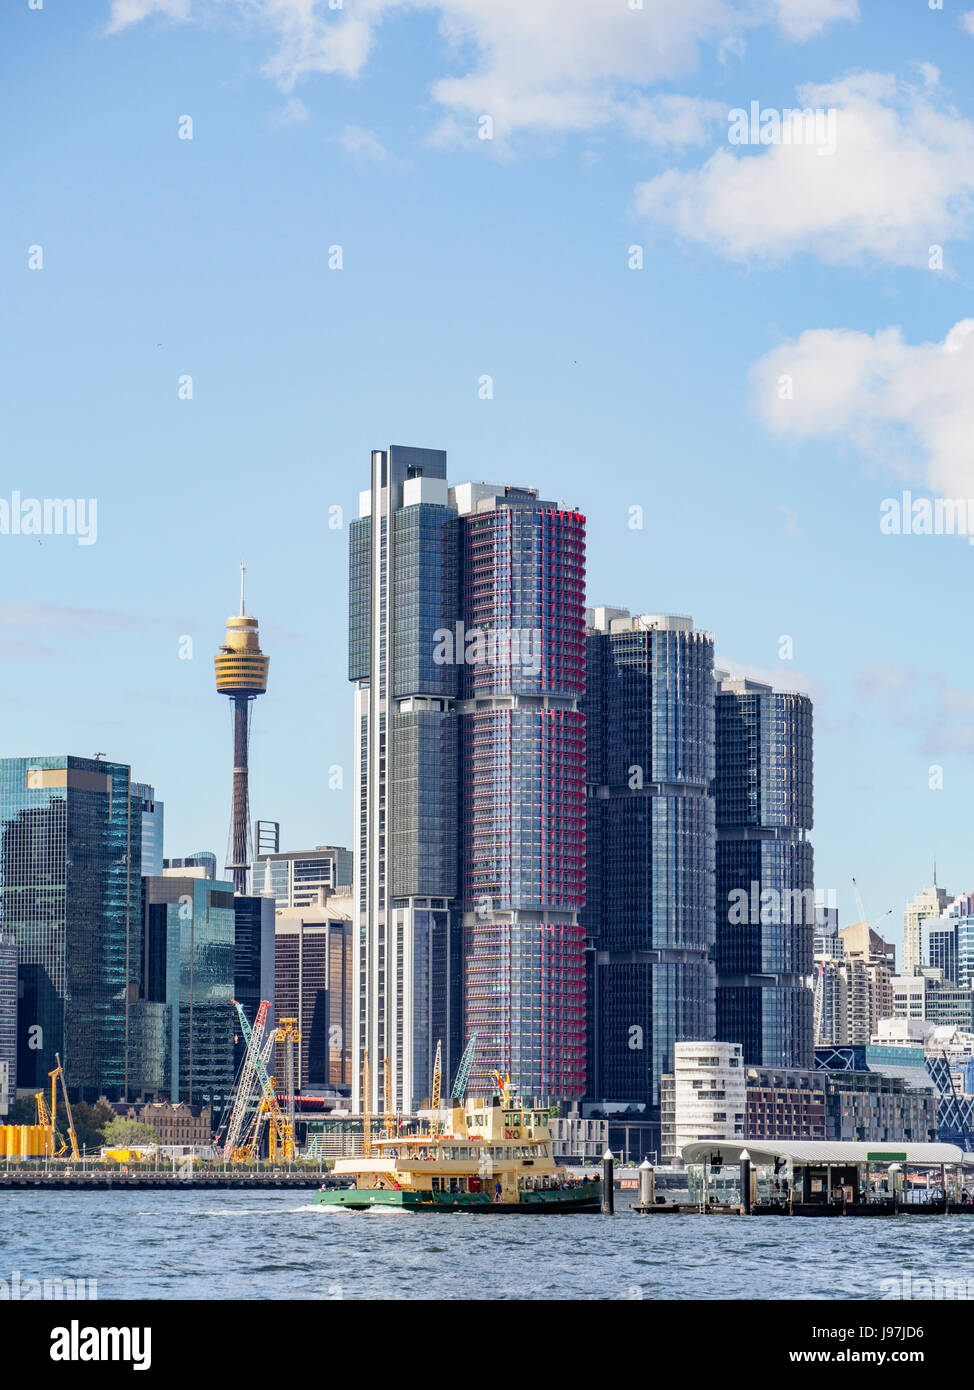 L'Australie, New South Wales, Sydney, ville avec des gratte-ciel Banque D'Images